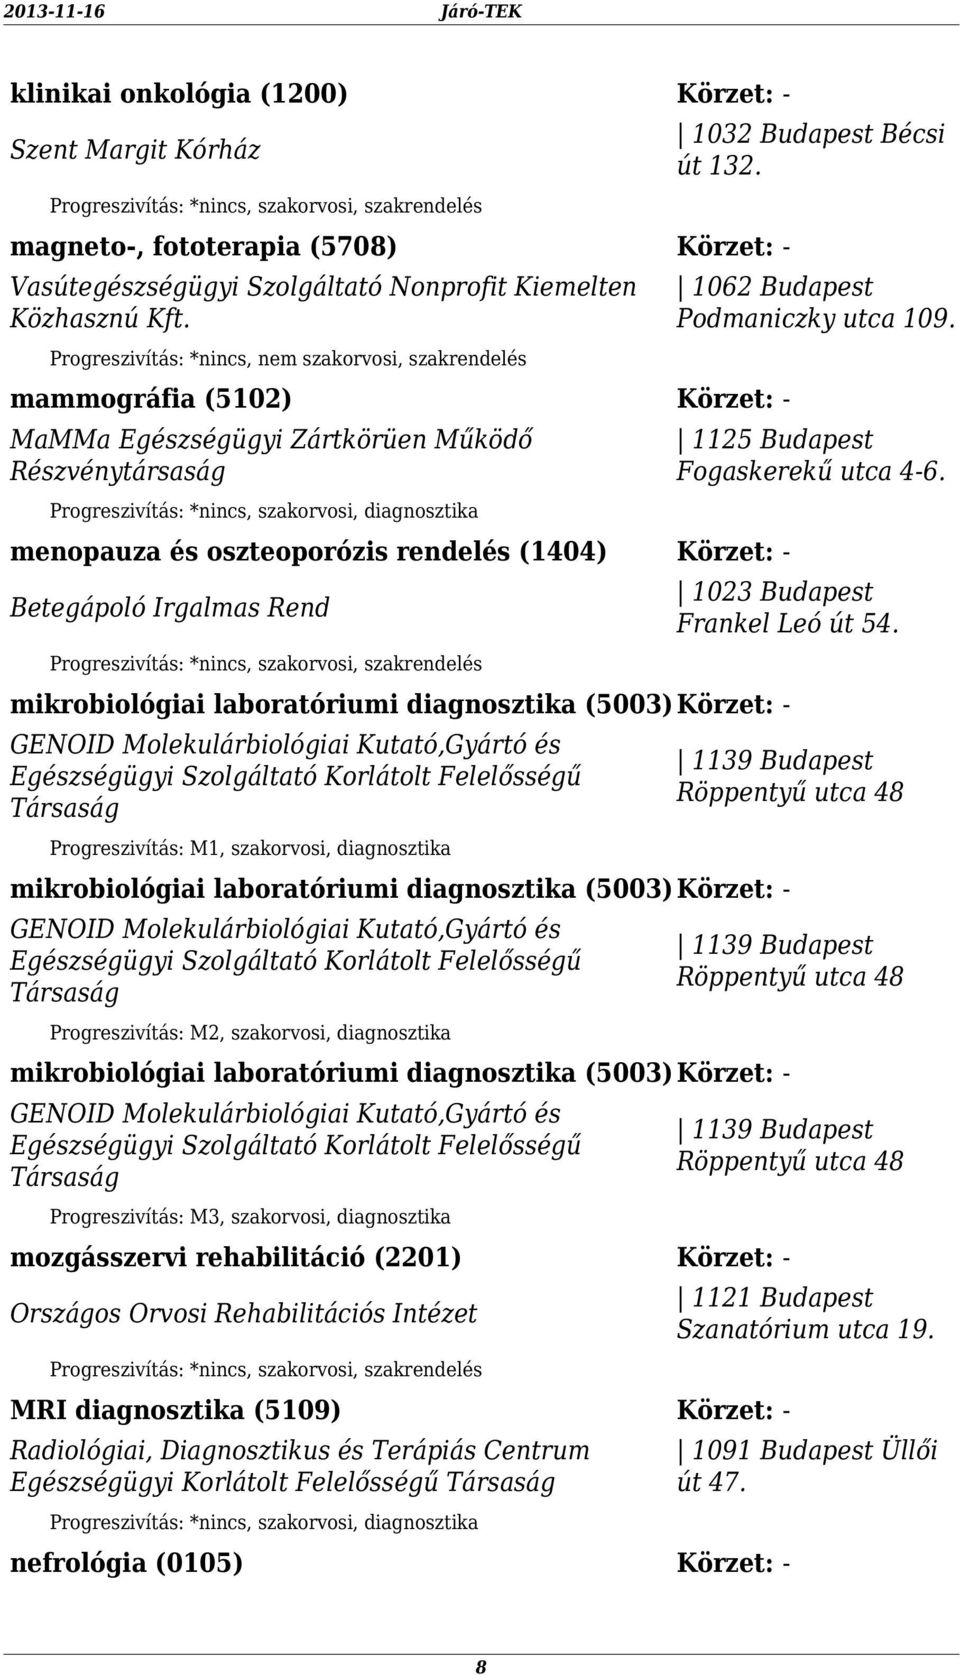 mikrobiológiai laboratóriumi diagnosztika (5003) GENOID Molekulárbiológiai Kutató,Gyártó és Egészségügyi Szolgáltató Korlátolt Felelősségű Társaság Progreszivítás: M1, szakorvosi, diagnosztika